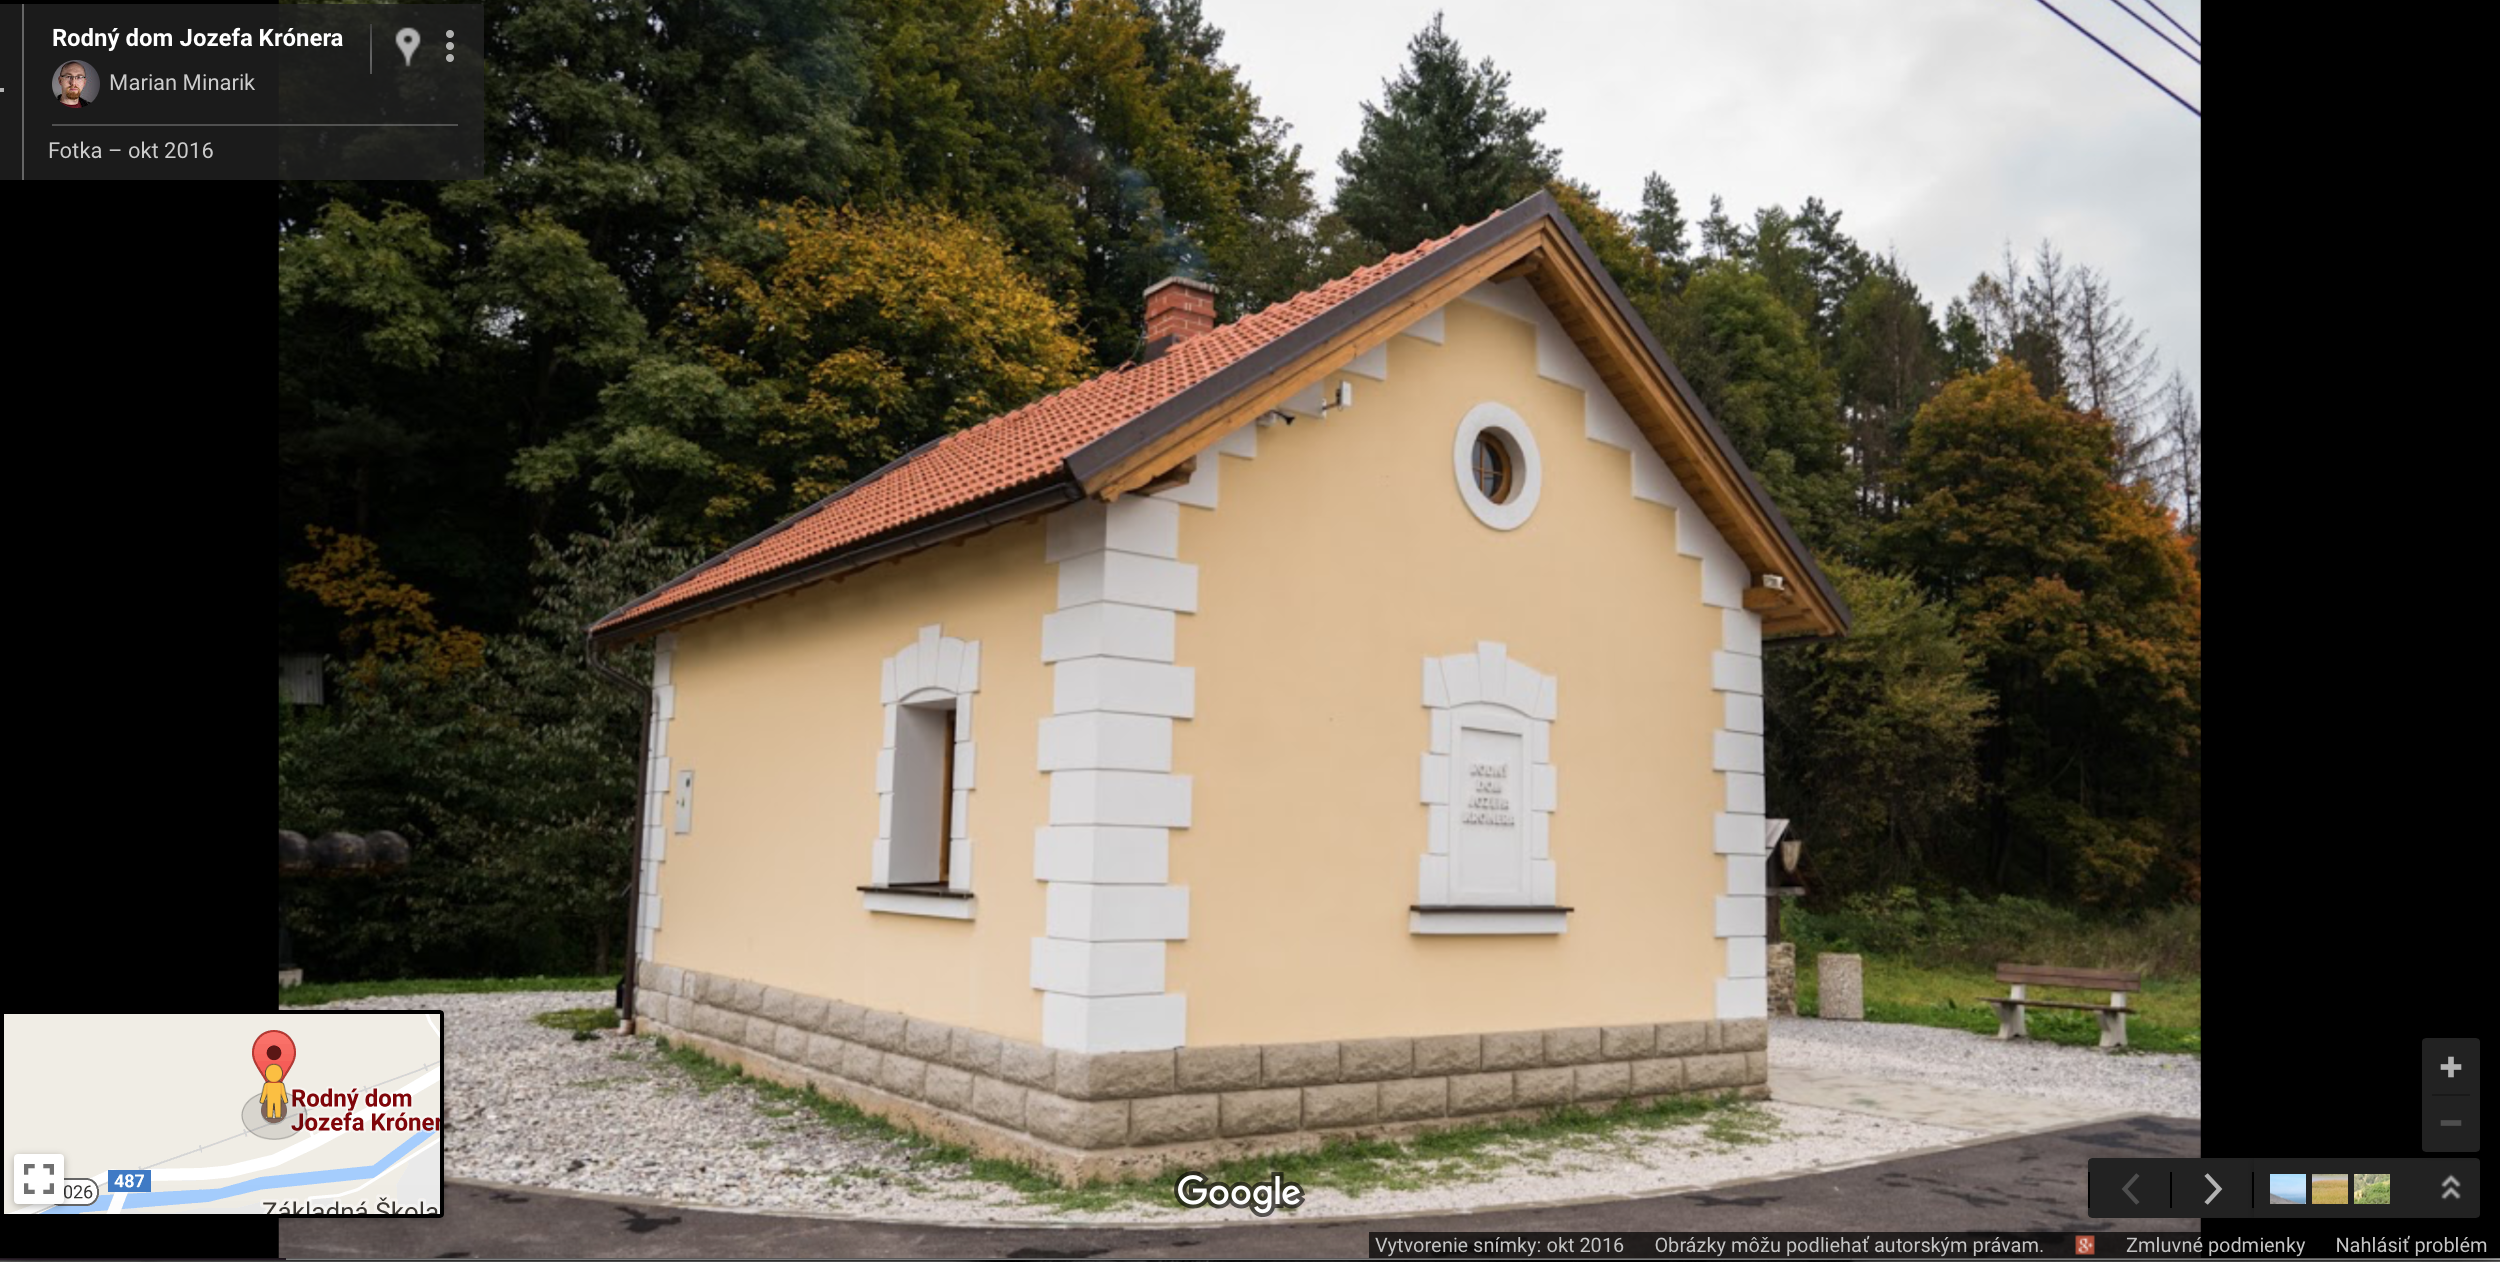 Rodny dom Jozefa Kronera